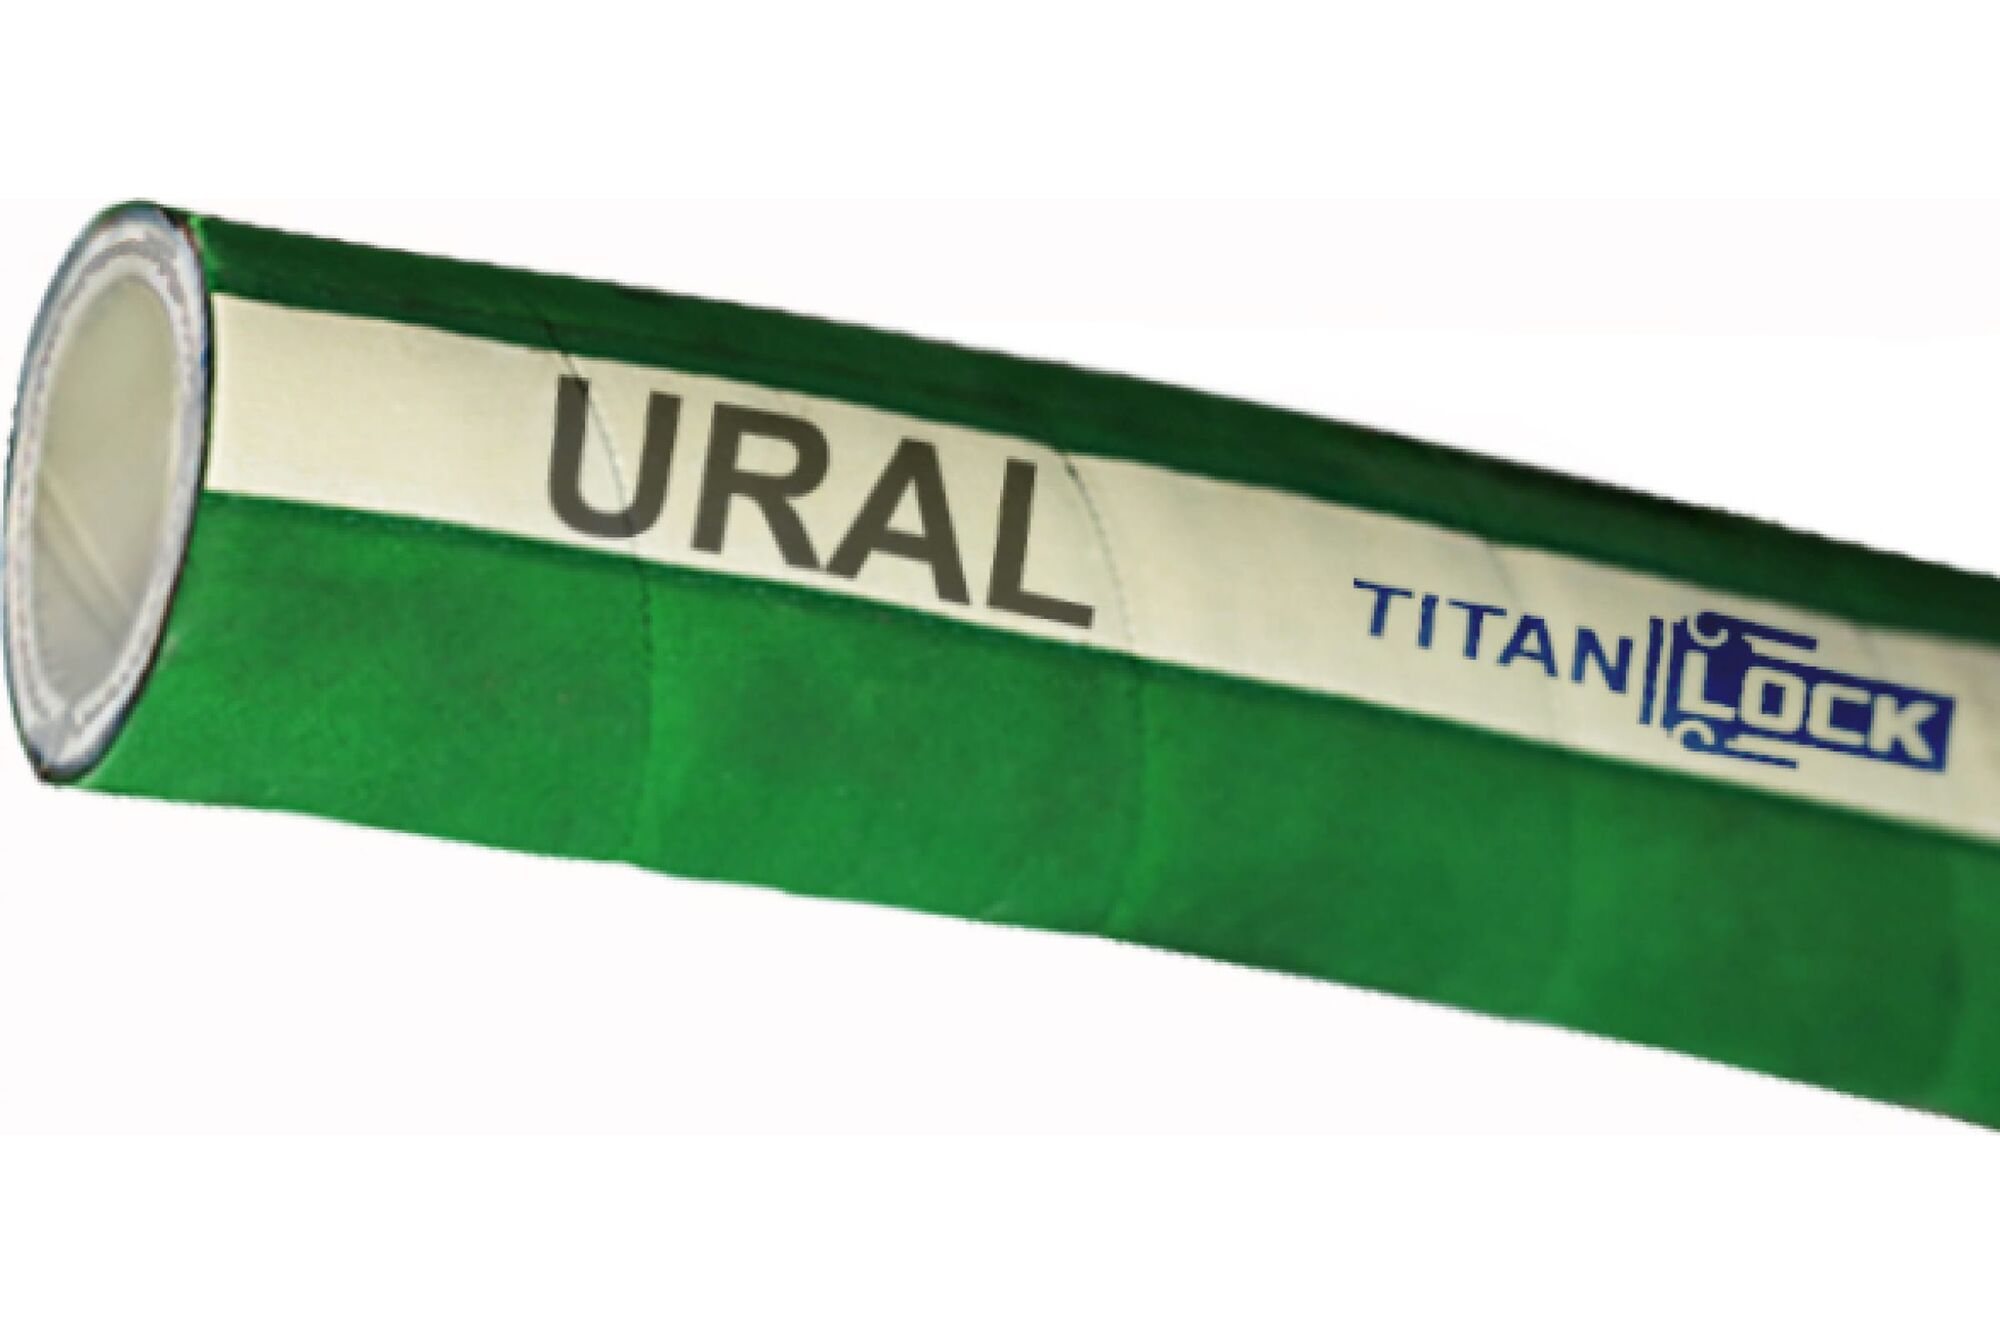 Химостойкий рукав «URAL», внутренний диаметр 38 мм, 16bar, 10 метров, UHMWPE, н/в TITAN LOCK TL038UR